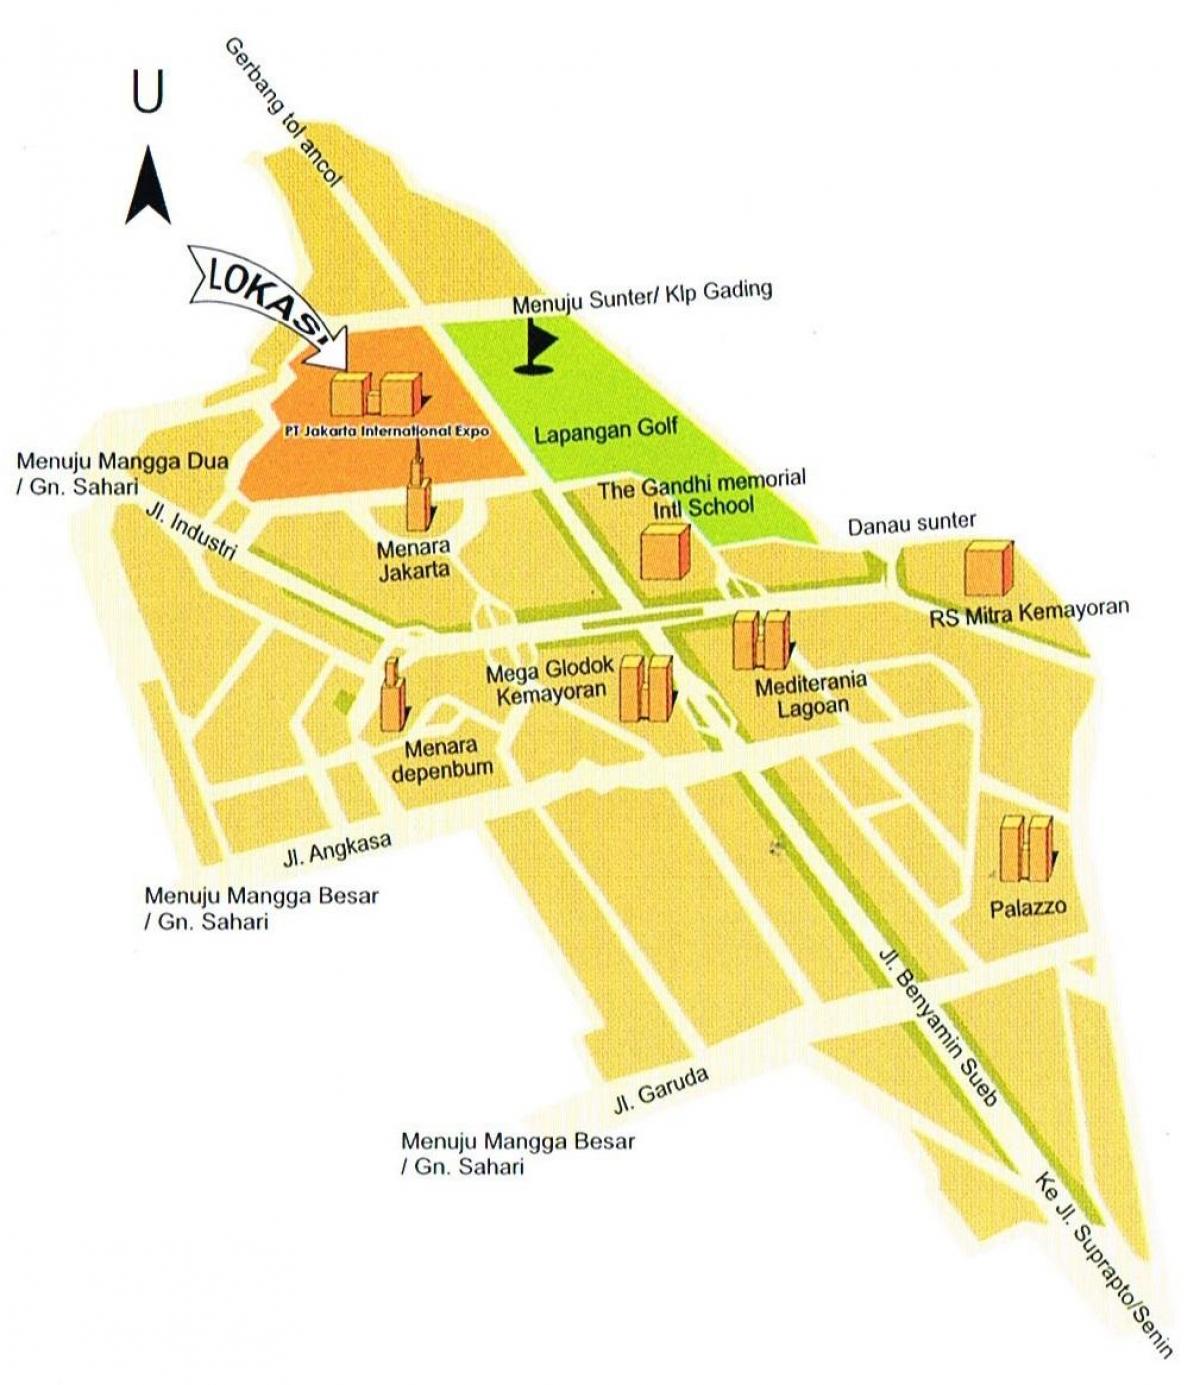 peta dari pt map jakar